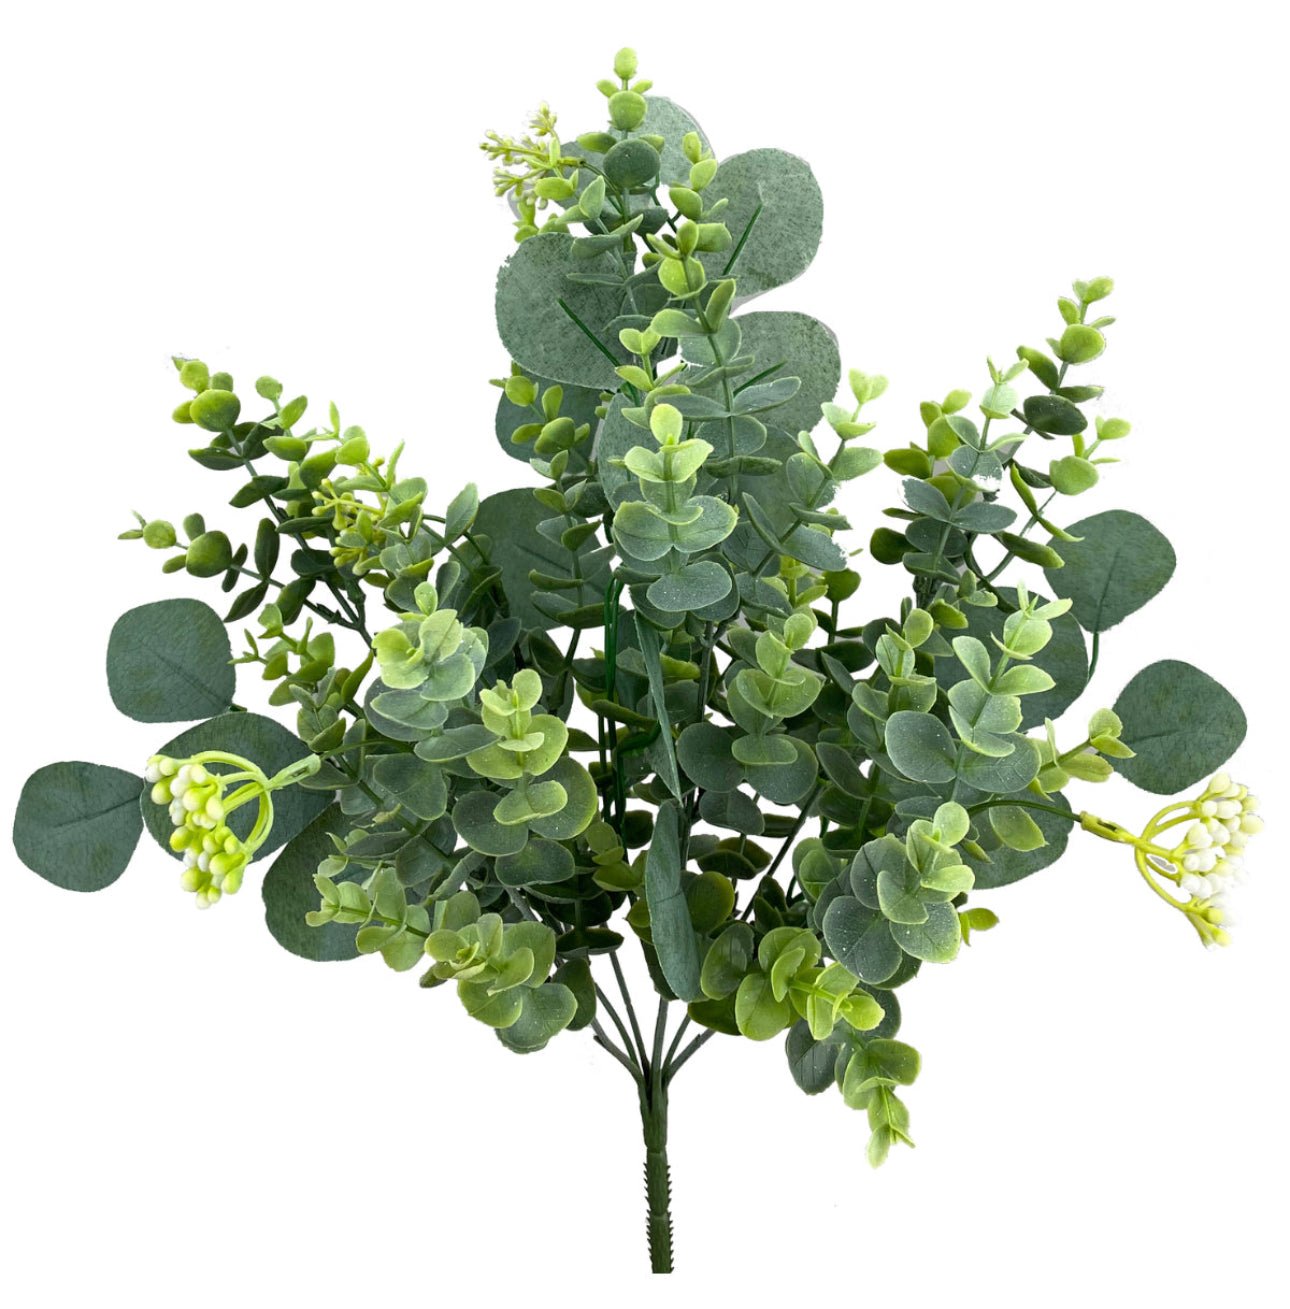 Artificial silver dollar Eucalyptus mixed bush - Greenery MarketArtificial Flora13533bu20